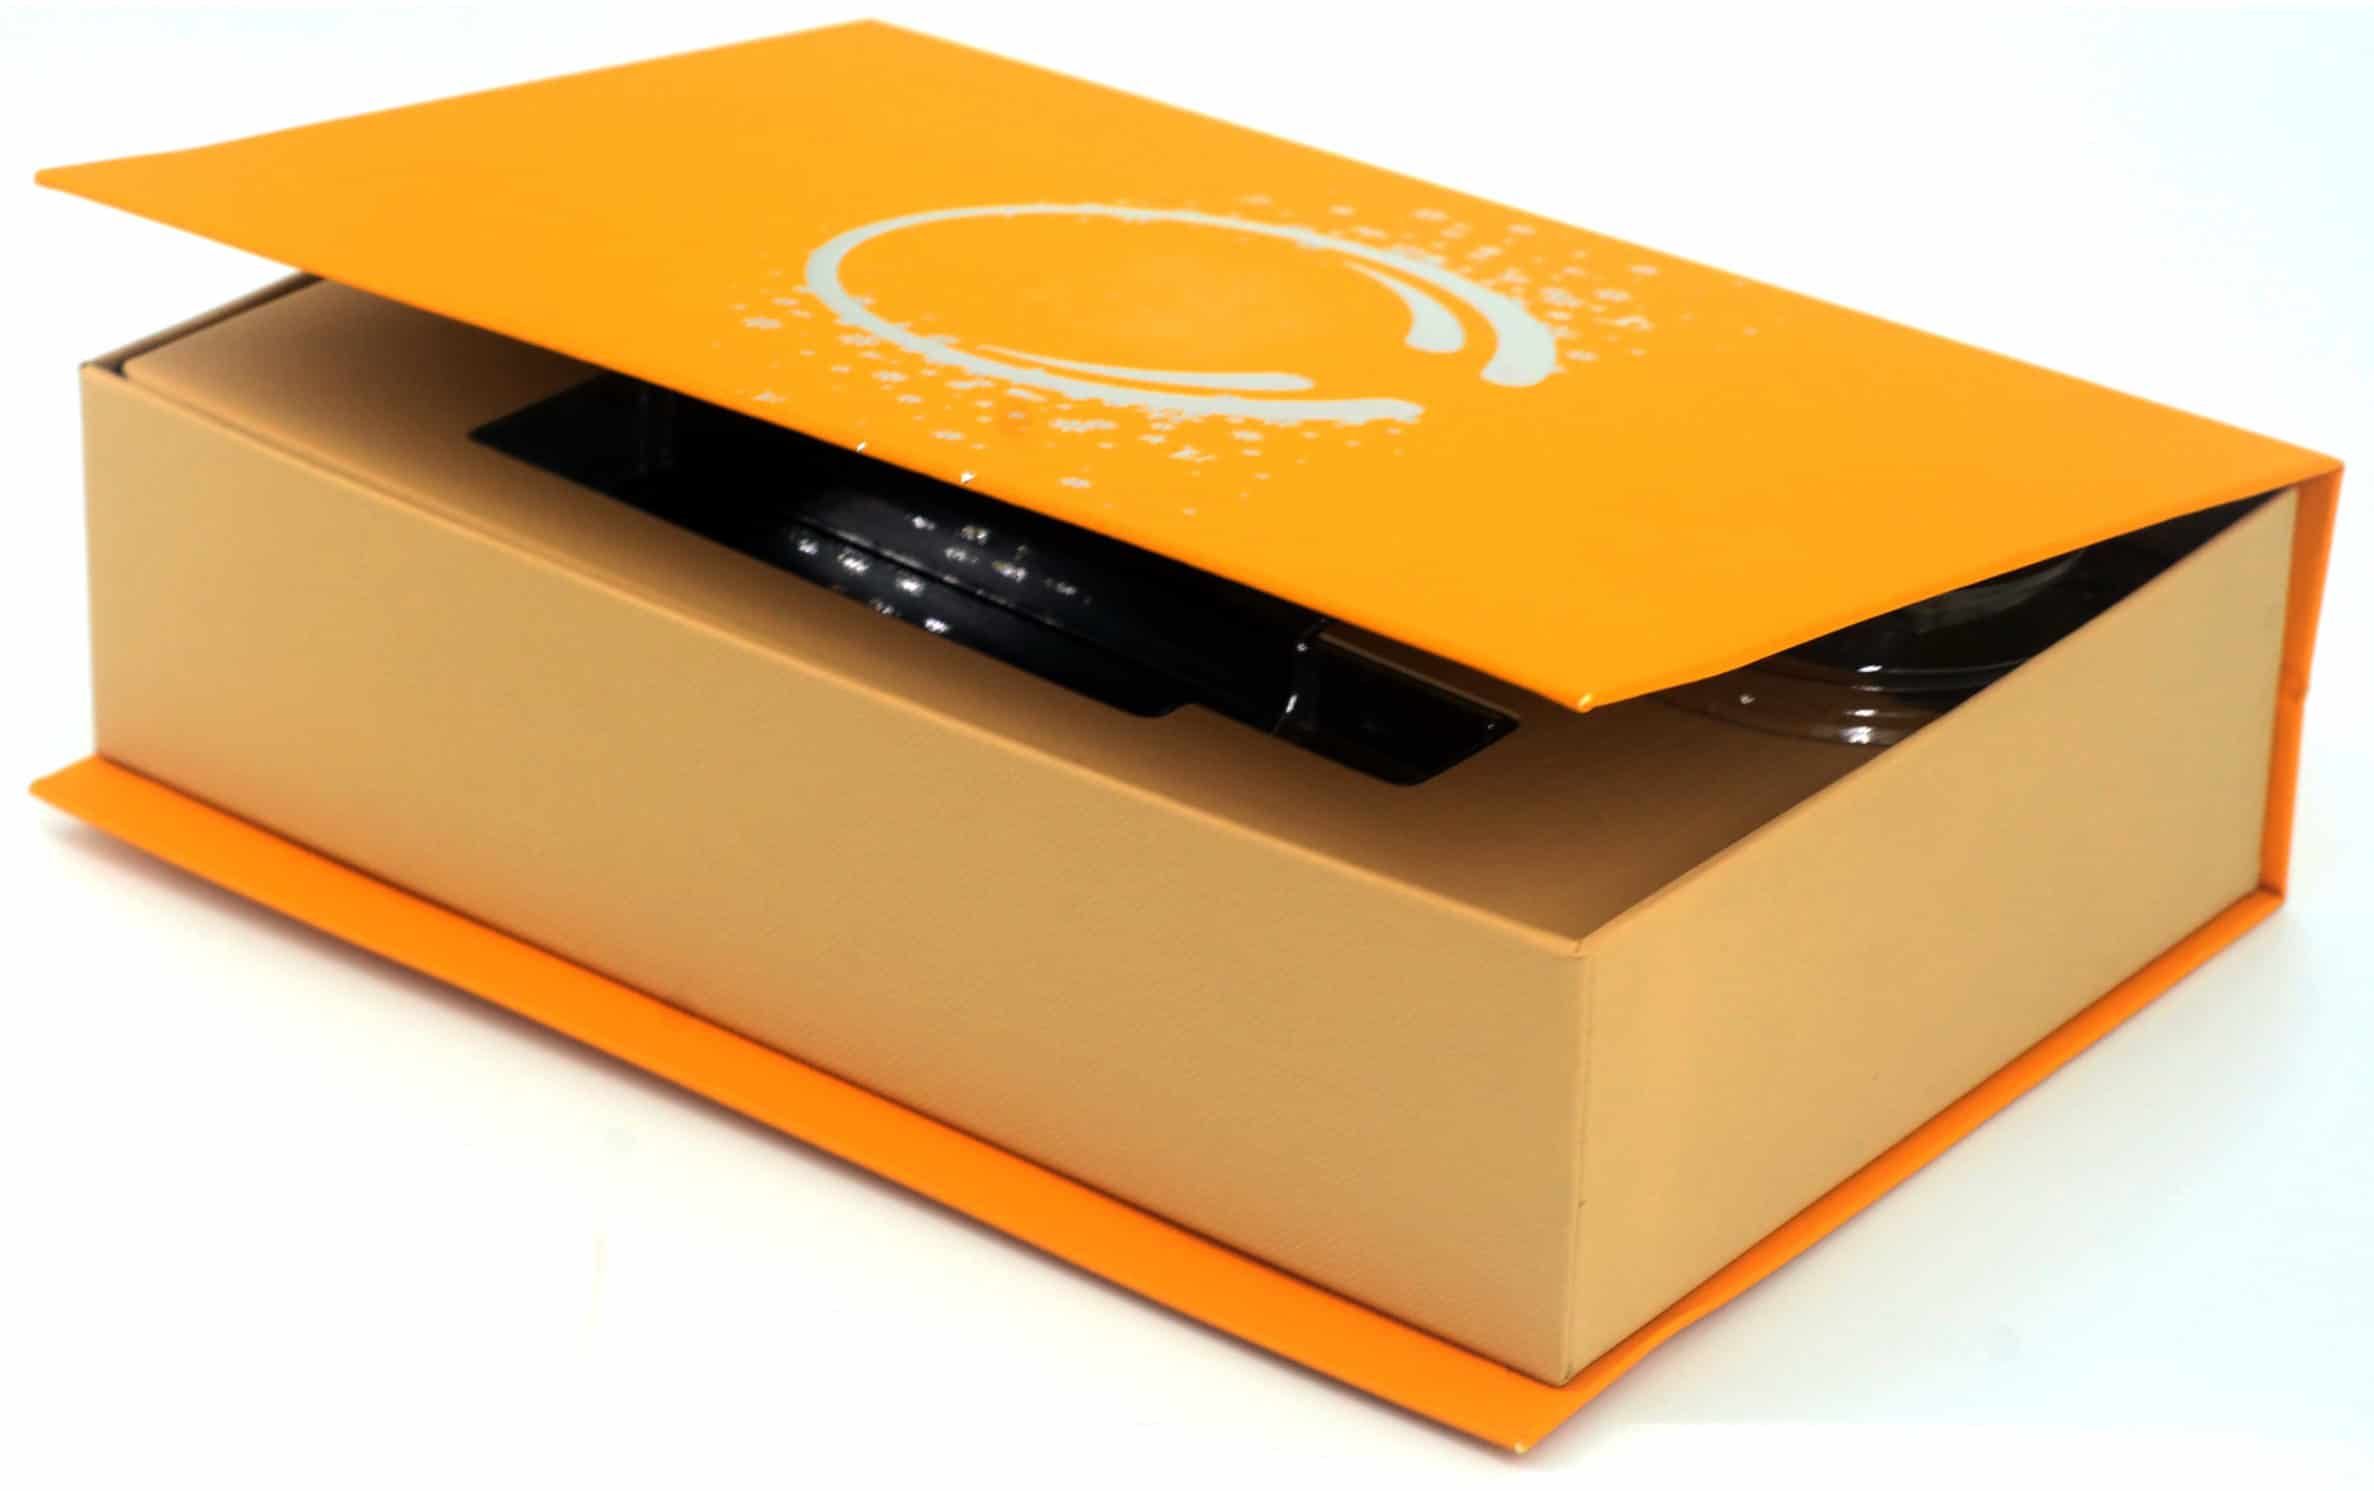 A semi-open orange gift box.